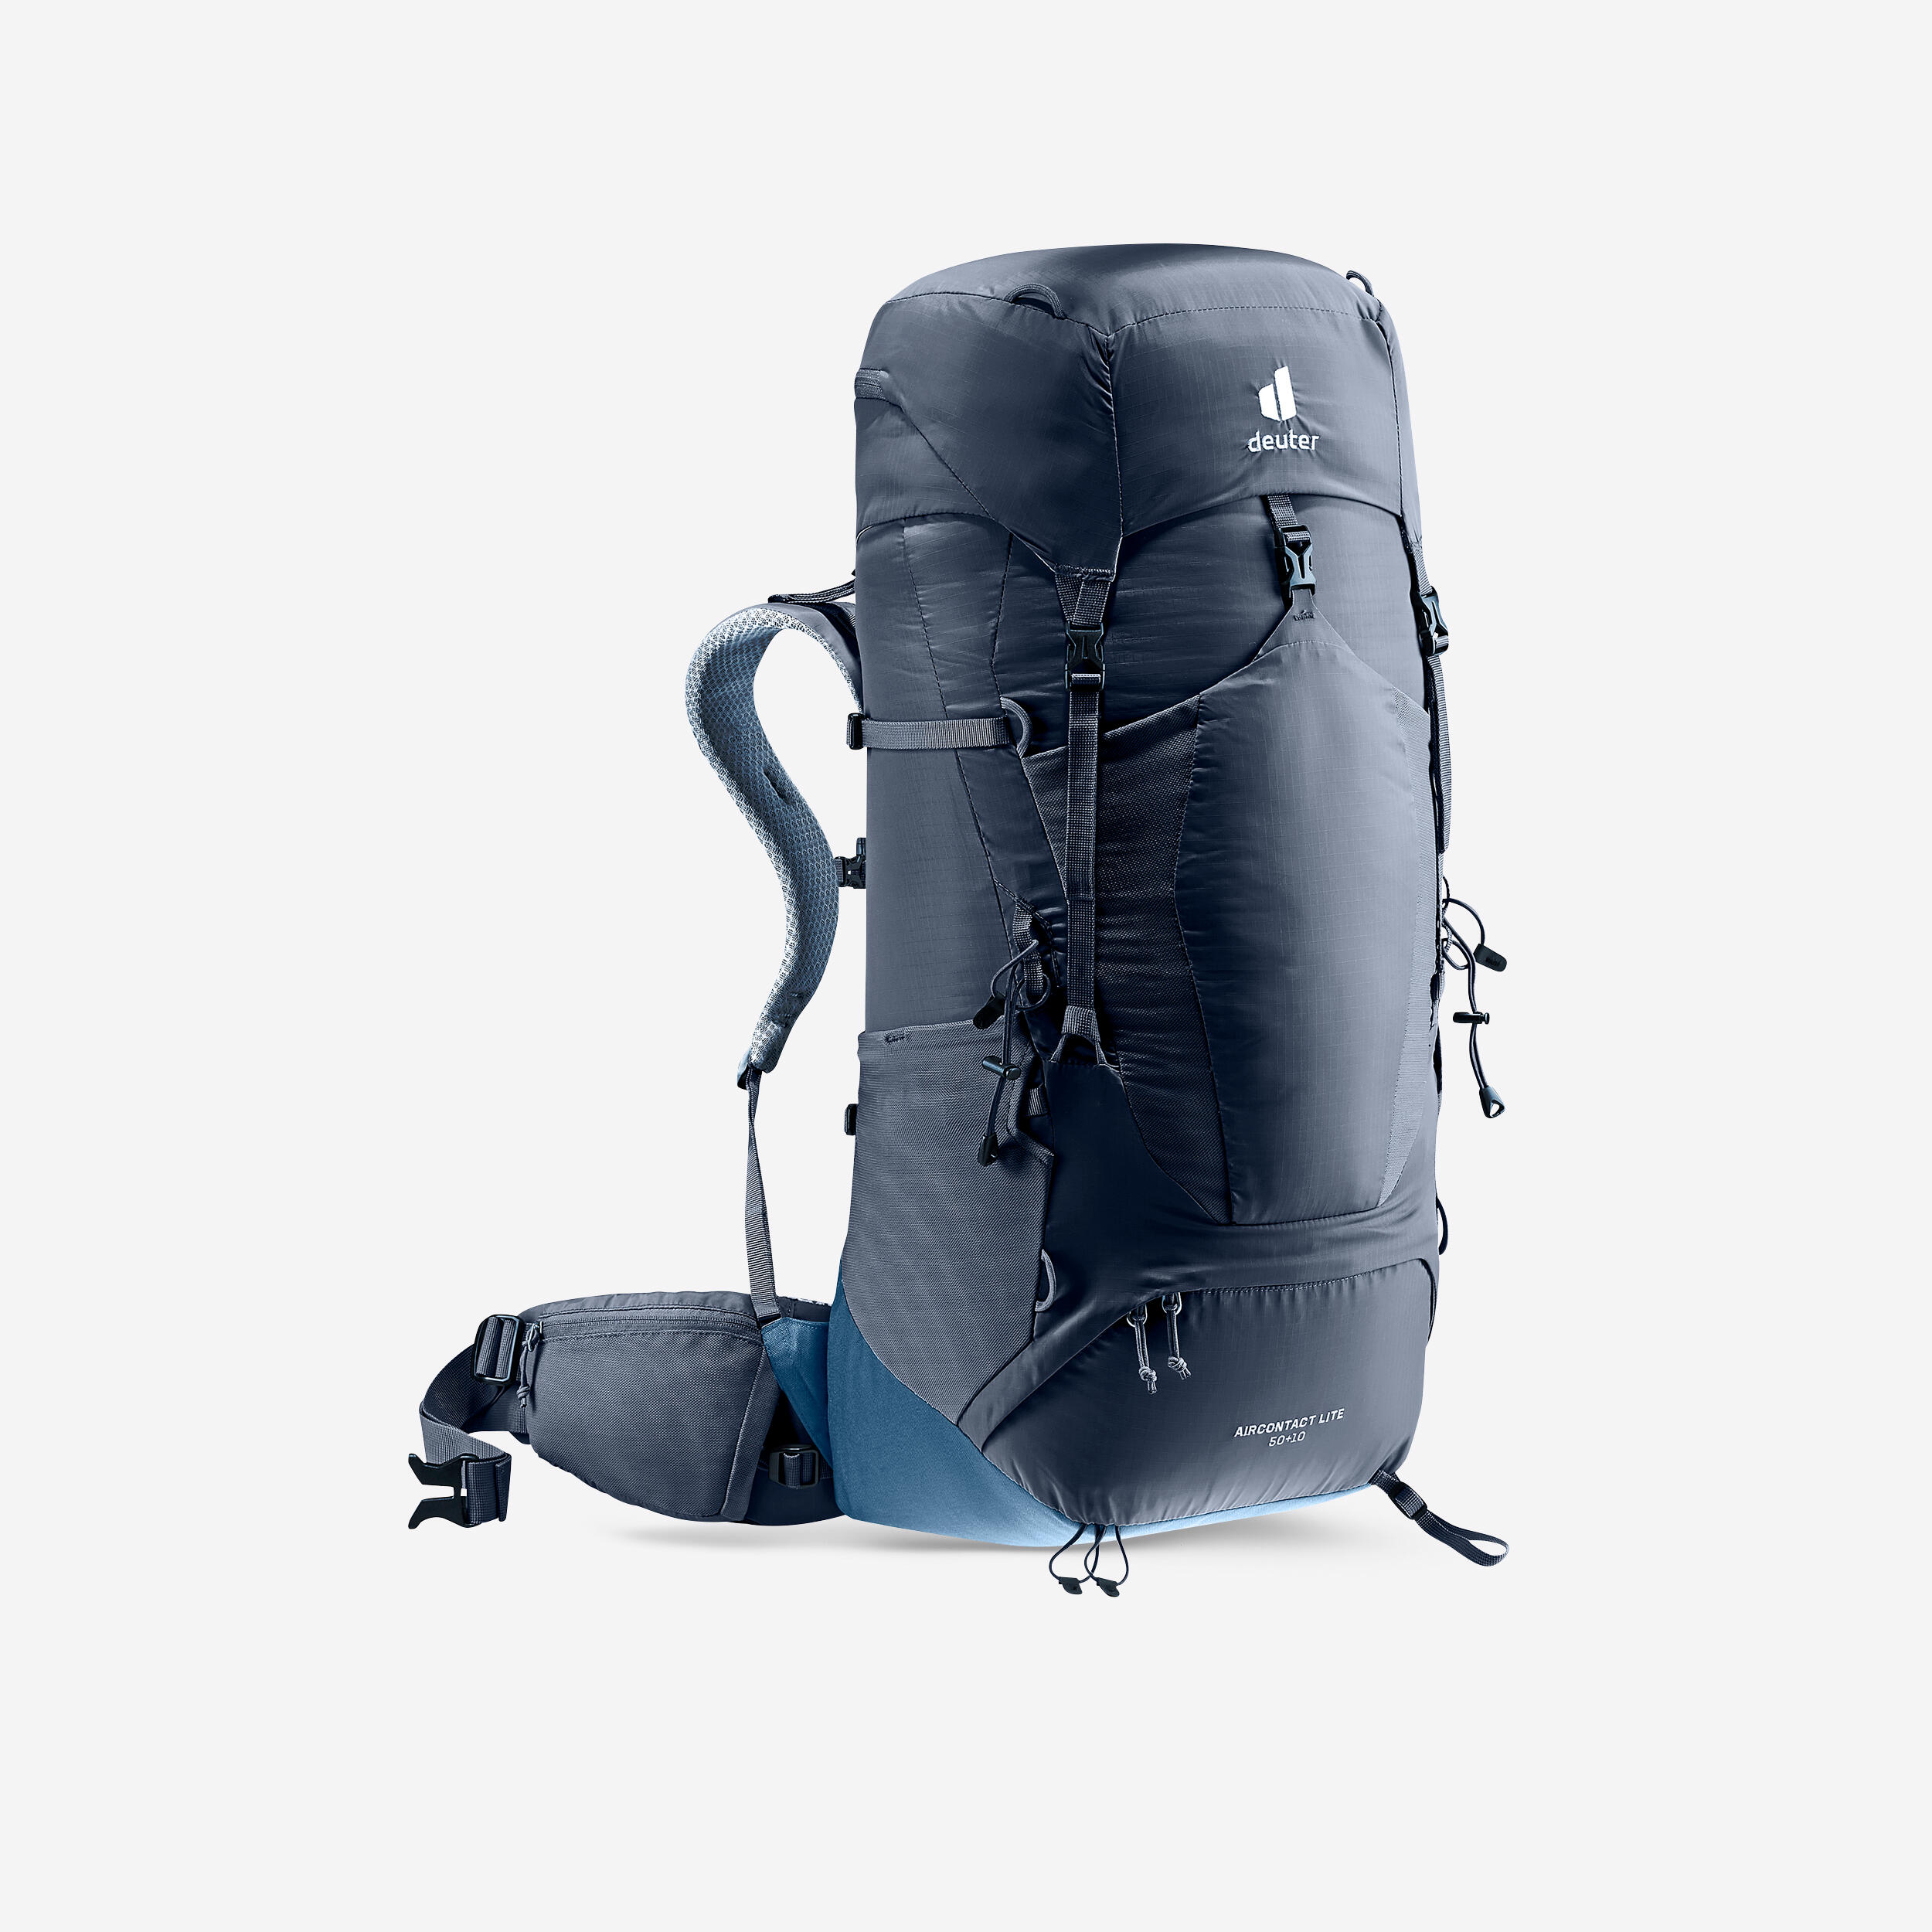 Trekking Backpack 50+10L - DEUTER AIR CONTACT LITE 1/7